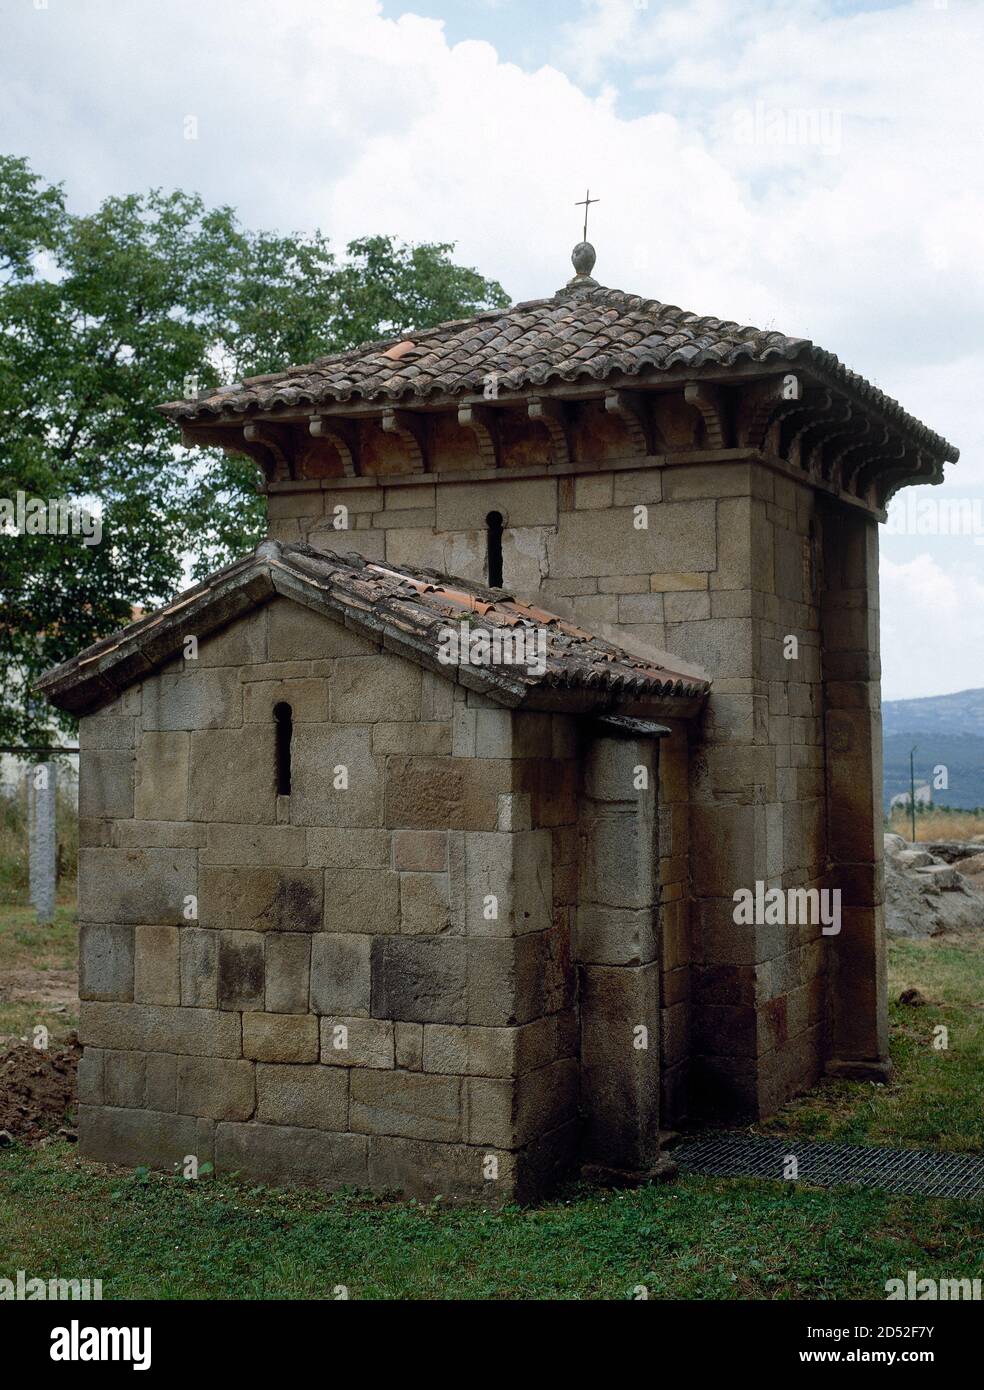 Spagna, Galizia, provincia di Ourense, Celanova. Cappella di San Miguel de  Celanova. Fondata da Froila e costruita nel 940, nei giardini del monastero  di Celanova (Monastero di San Salvador). Architettura mozarabica. Si